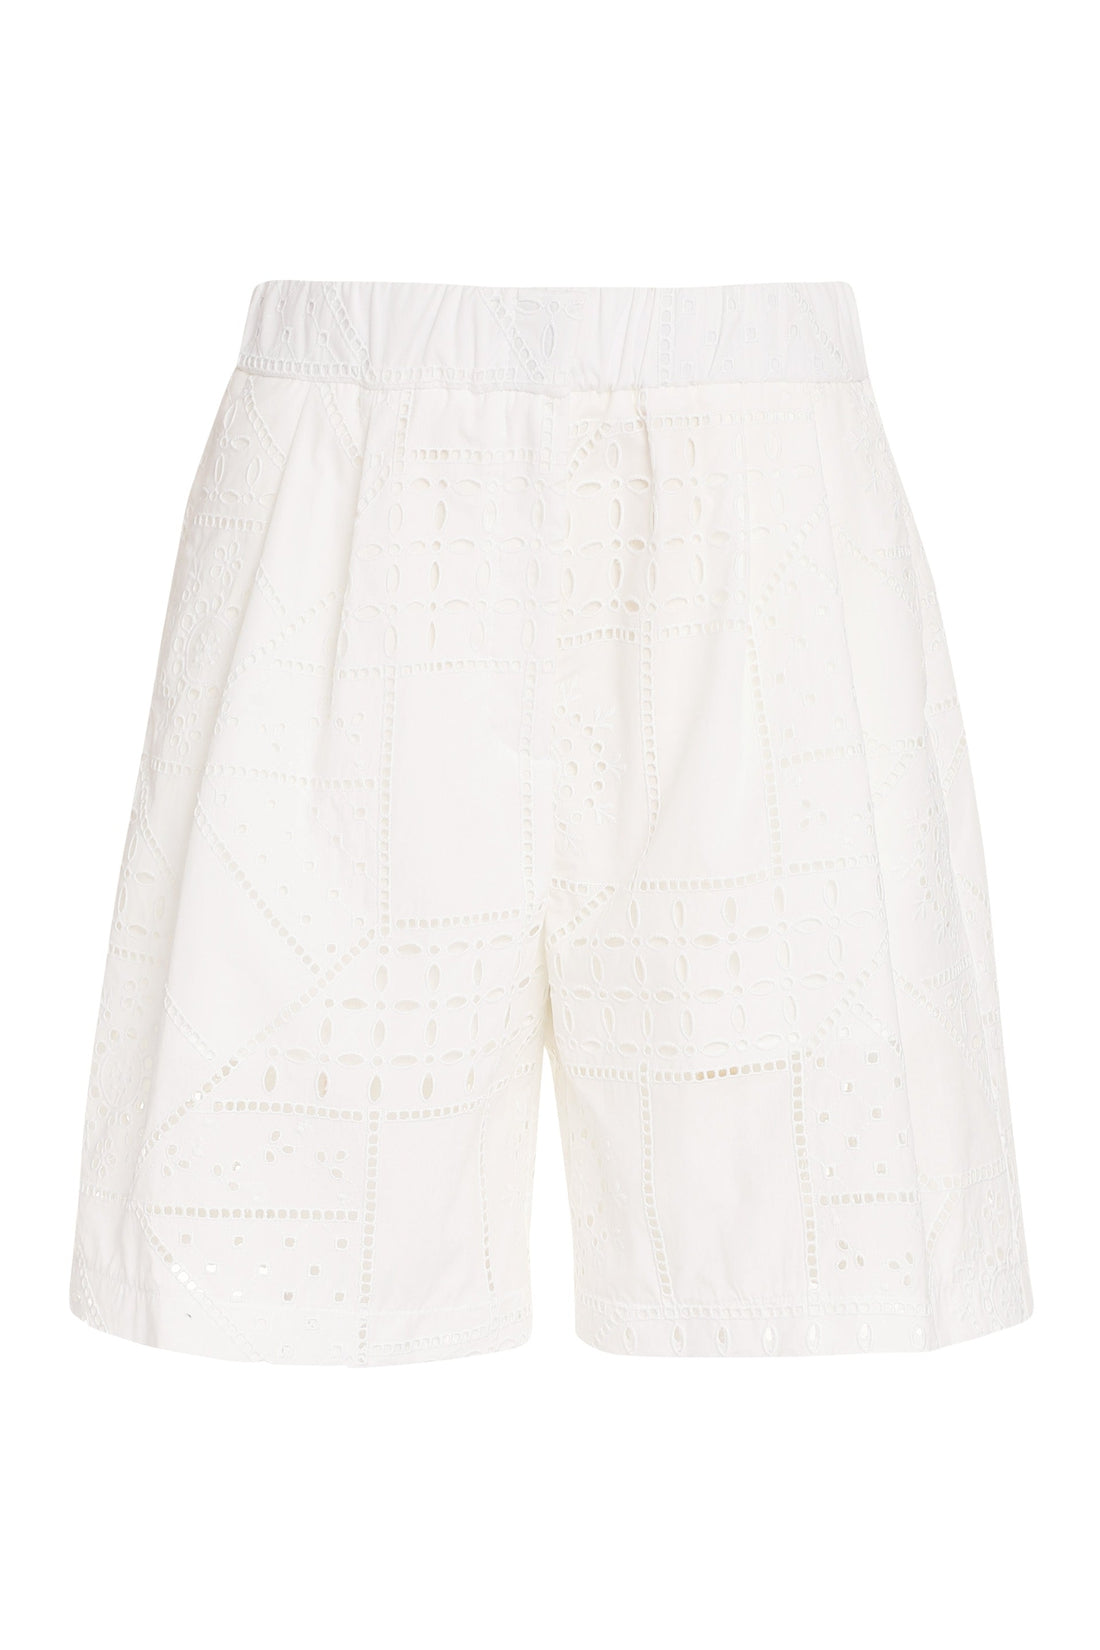 MSGM-OUTLET-SALE-Lace shorts-ARCHIVIST